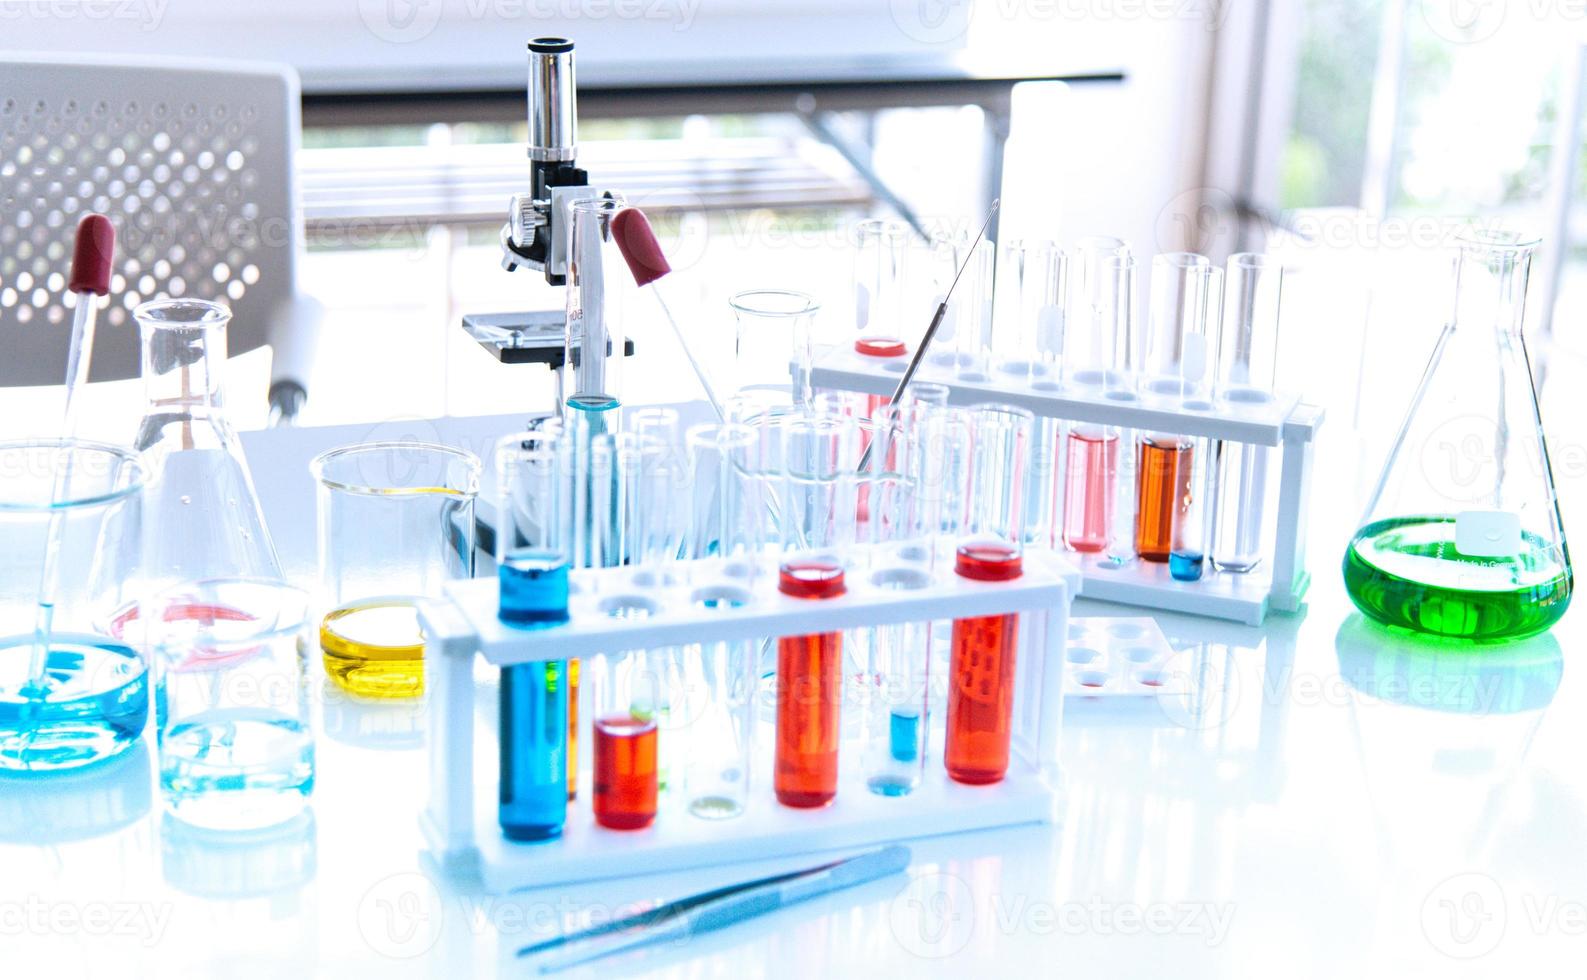 préparation d'équipements de laboratoire tels que verrerie, tube avec bleu et liquide sur la table blanche. l'expérience de chimie dans la recherche scientifique photo